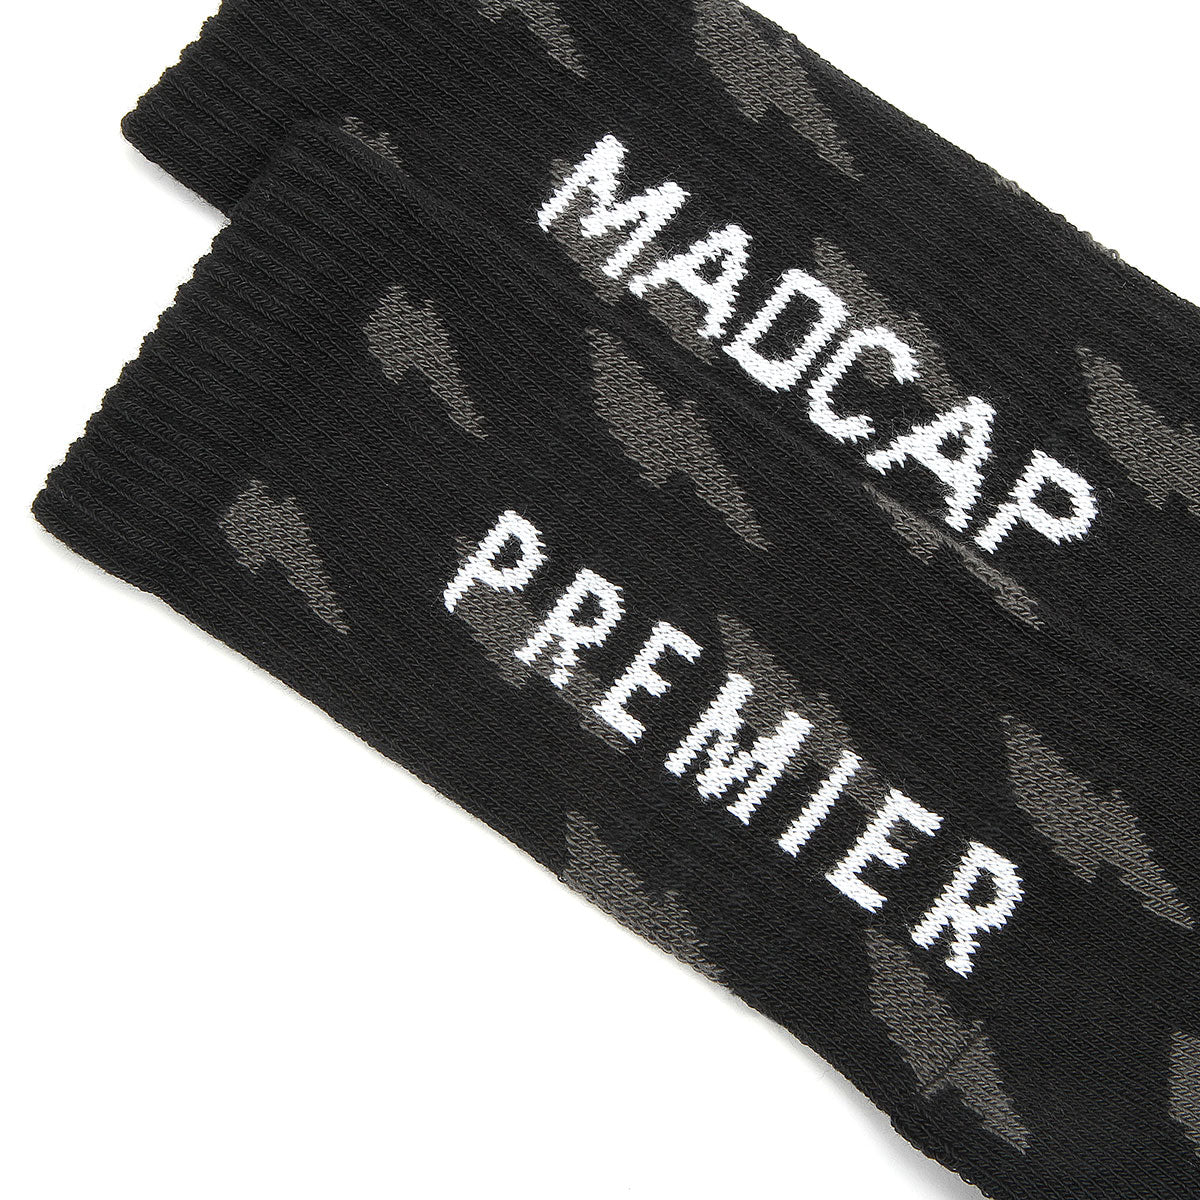 Premier x Madcap Crew Sock